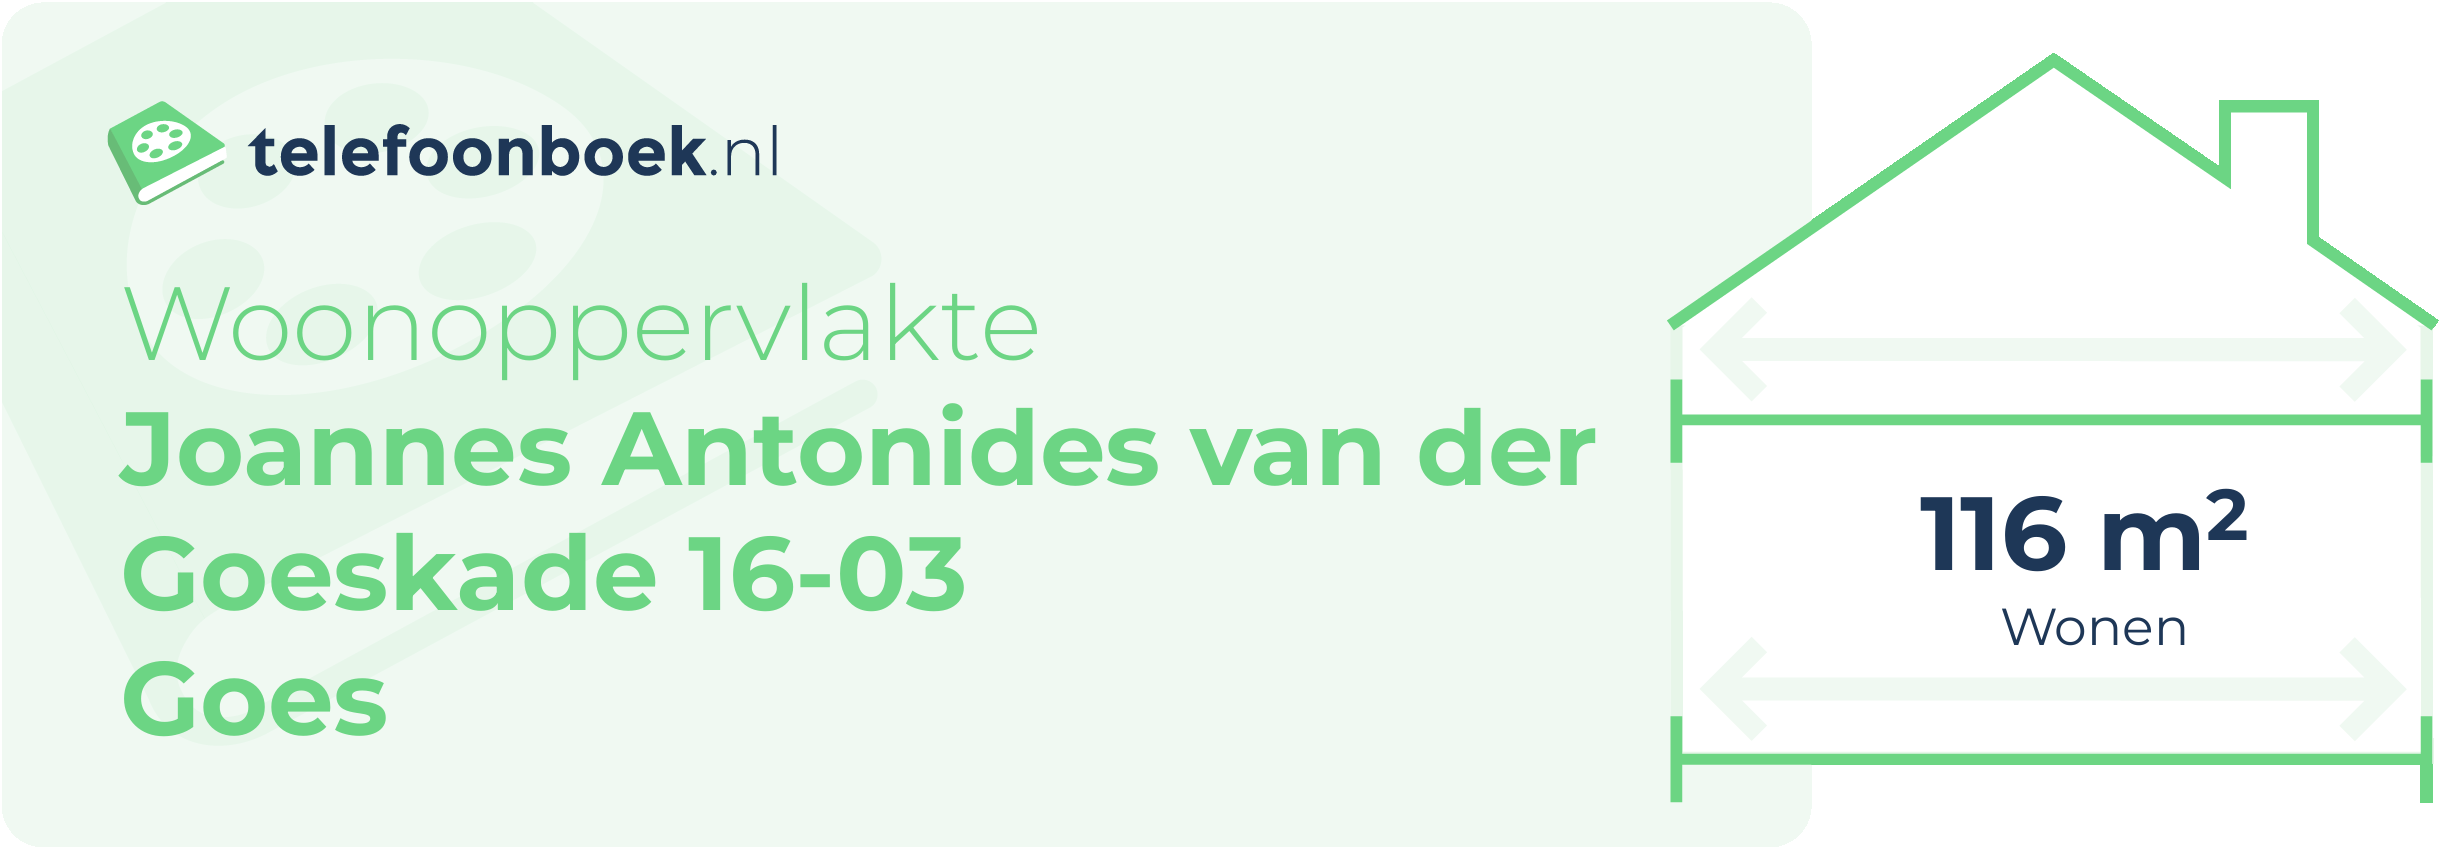 Woonoppervlakte Joannes Antonides Van Der Goeskade 16-03 Goes